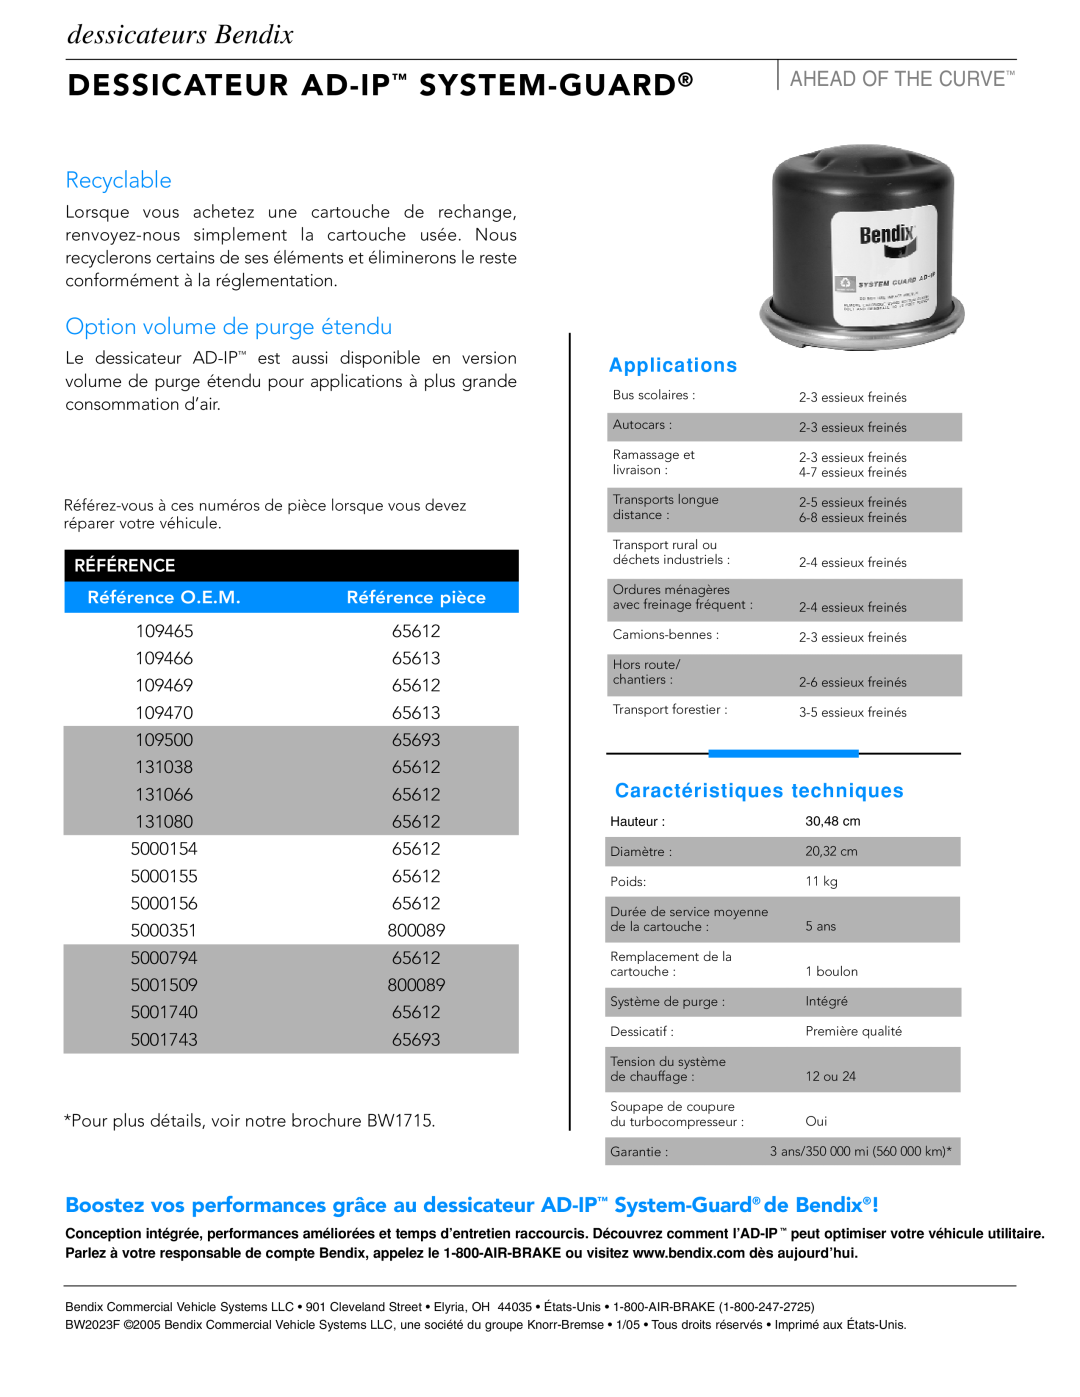 BENDIX BW2023F Dessicateur Ad-Ip System-Guard, Recyclable, Option volume de purge étendu, dessicateurs Bendix, Référence 